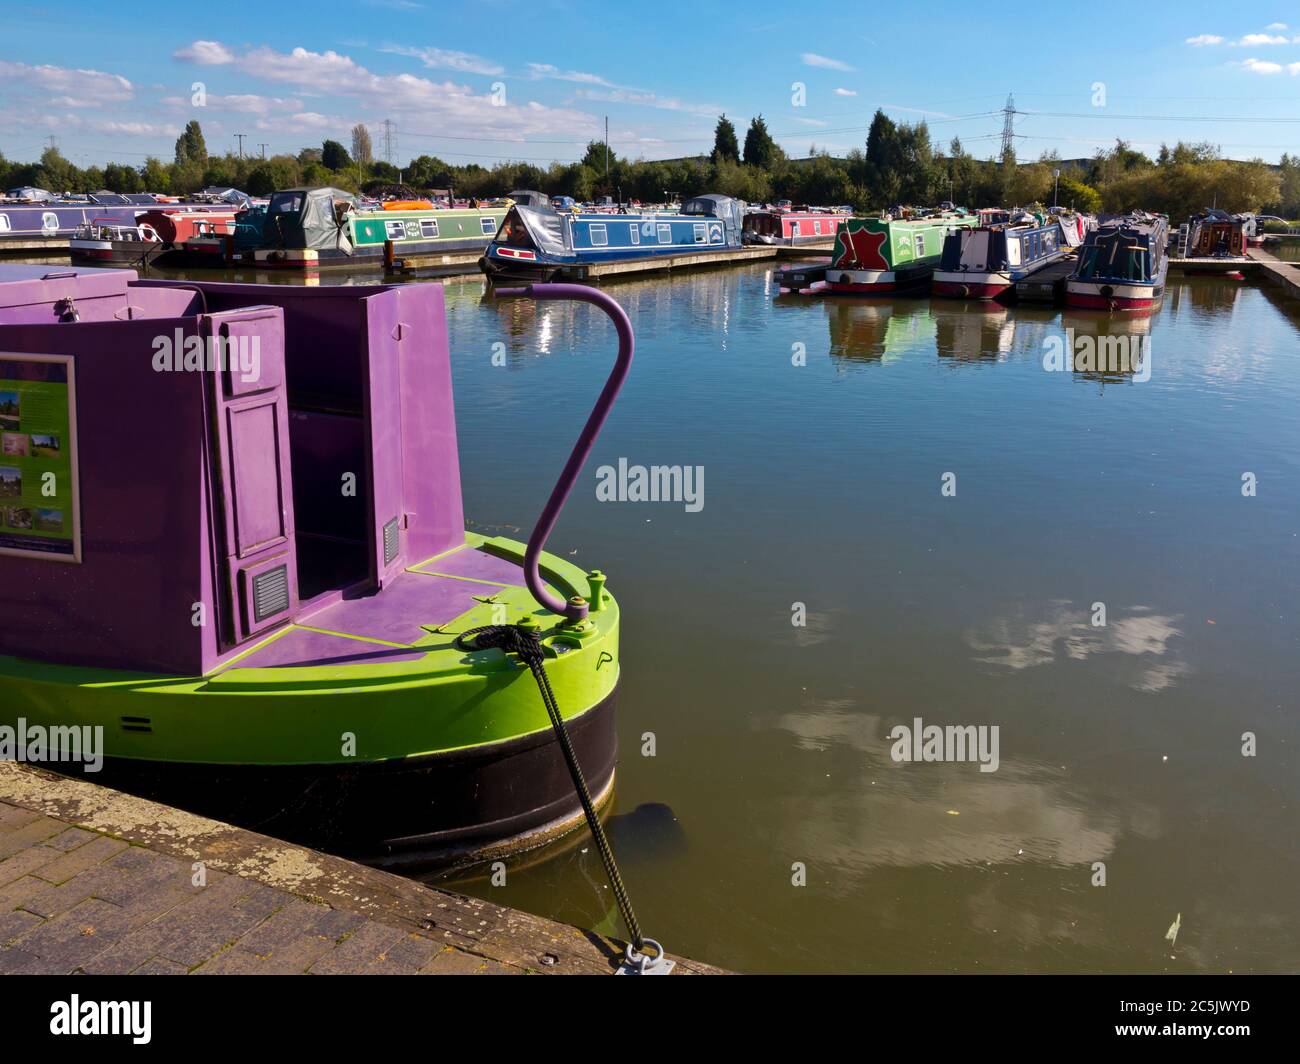 Barton Marina sur le canal Trent et Mersey dans le Staffordshire Angleterre. Banque D'Images